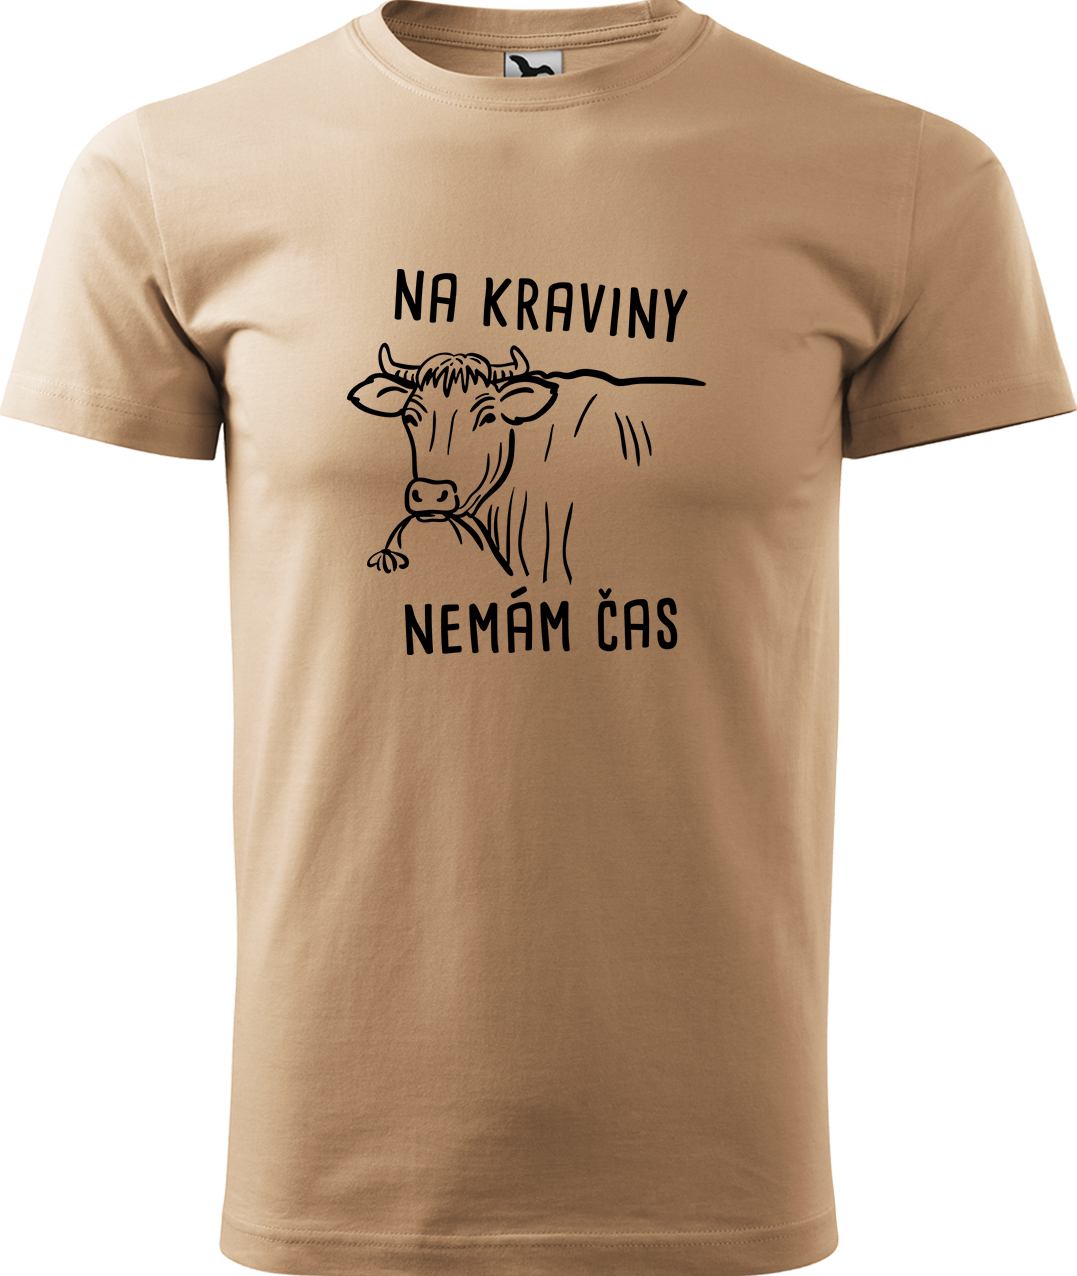 Pánské tričko s krávou - Na kraviny nemám čas Velikost: M, Barva: Písková (08), Střih: pánský